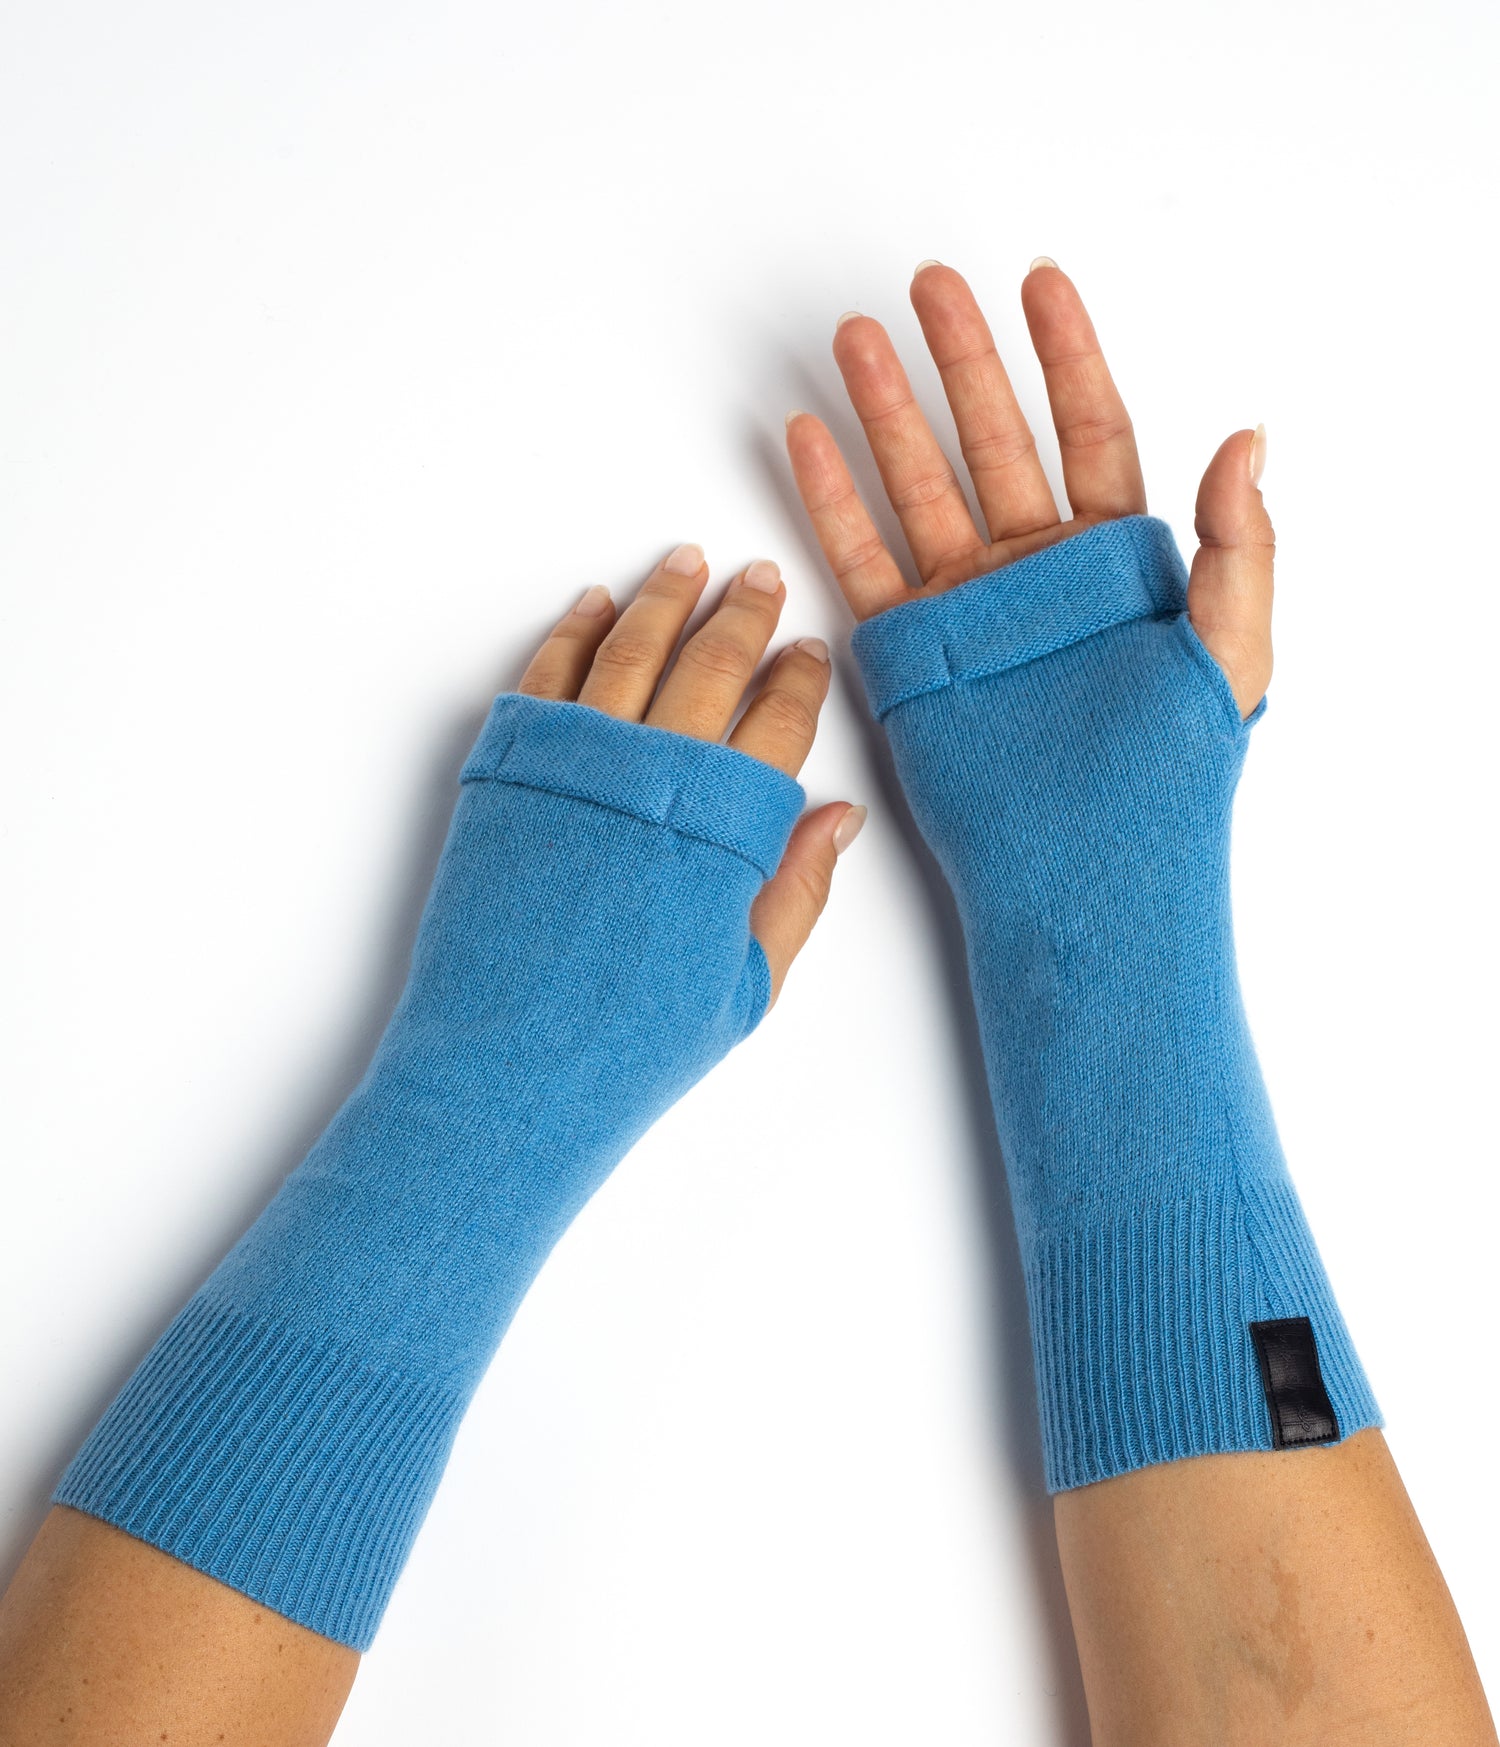 Azure Fingerless Gloves Set - Baby Blue, Light Blue, Denim Blue, Box of 3